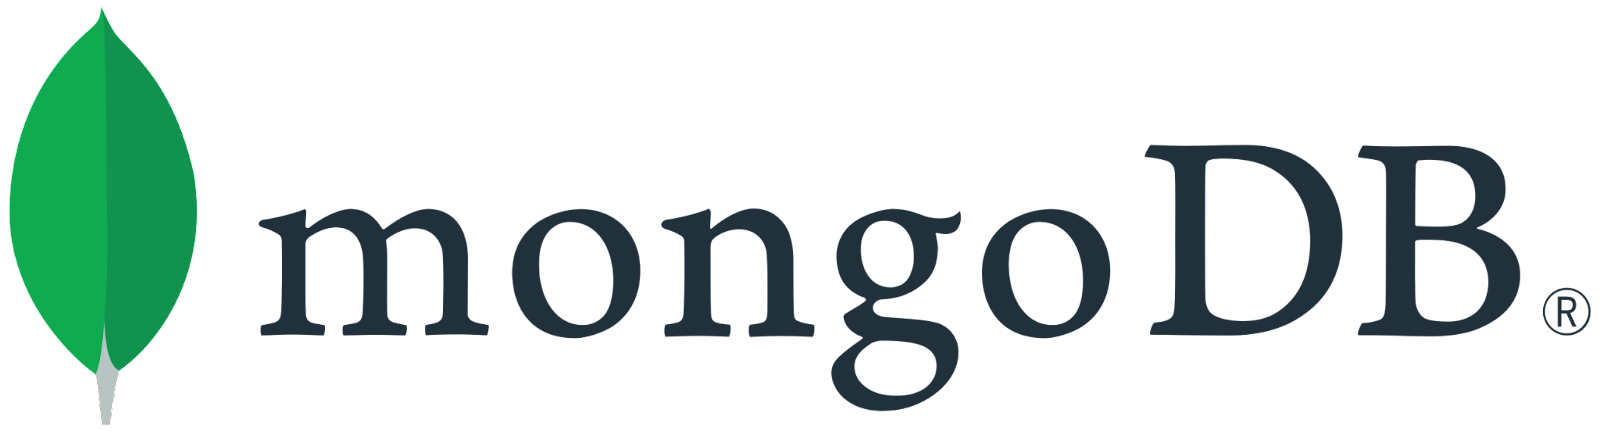 MongoDB - MongoDB vs Snowflake - Snowflake vs MongoDB